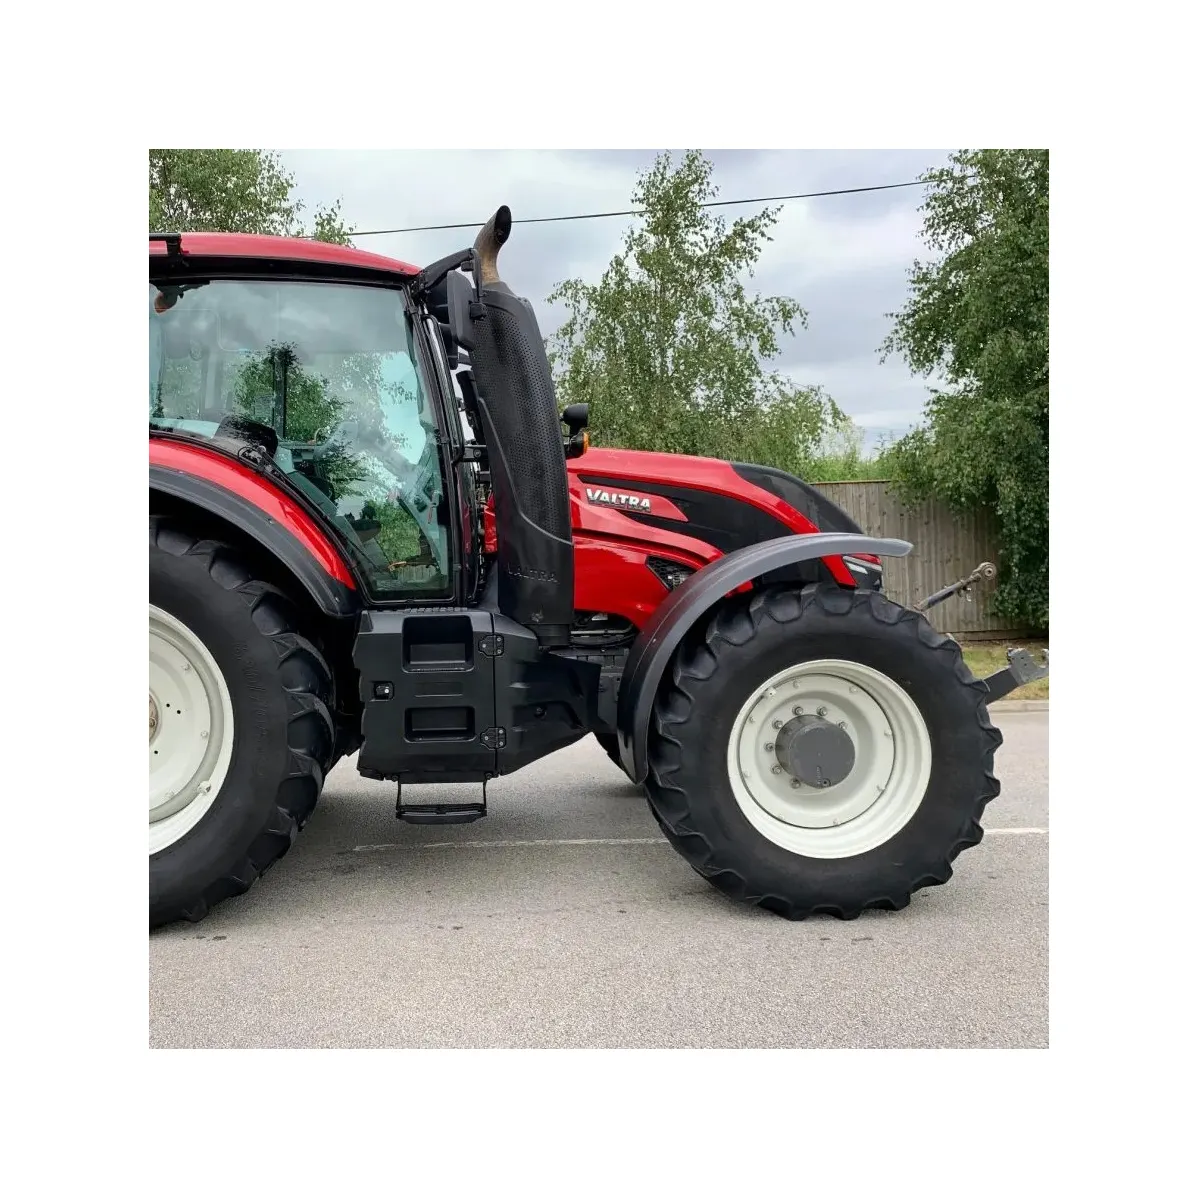 Tractores usados Valtra 8150 8950 4X4WD equipo agrícola maquinaria agrícola Pequeños mini tractores de huerto